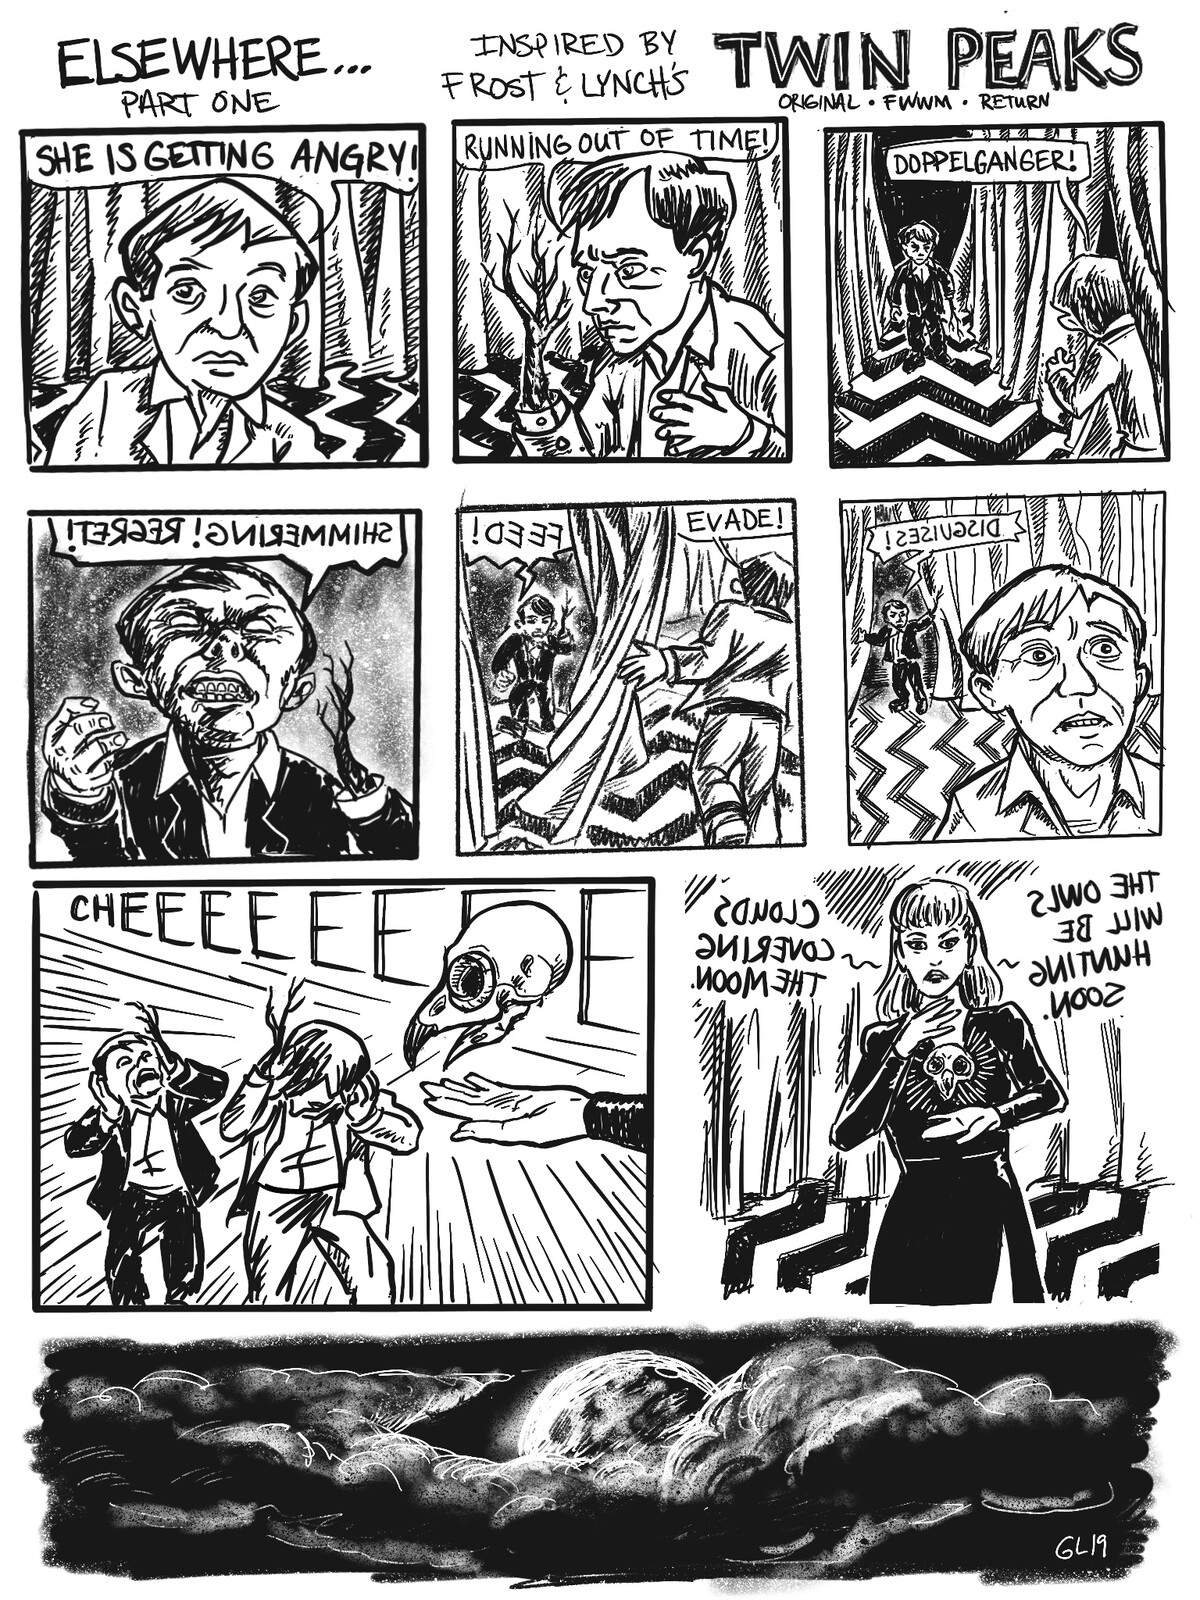 Twin Peaks: Elsewhere
A fan comic. Page 1